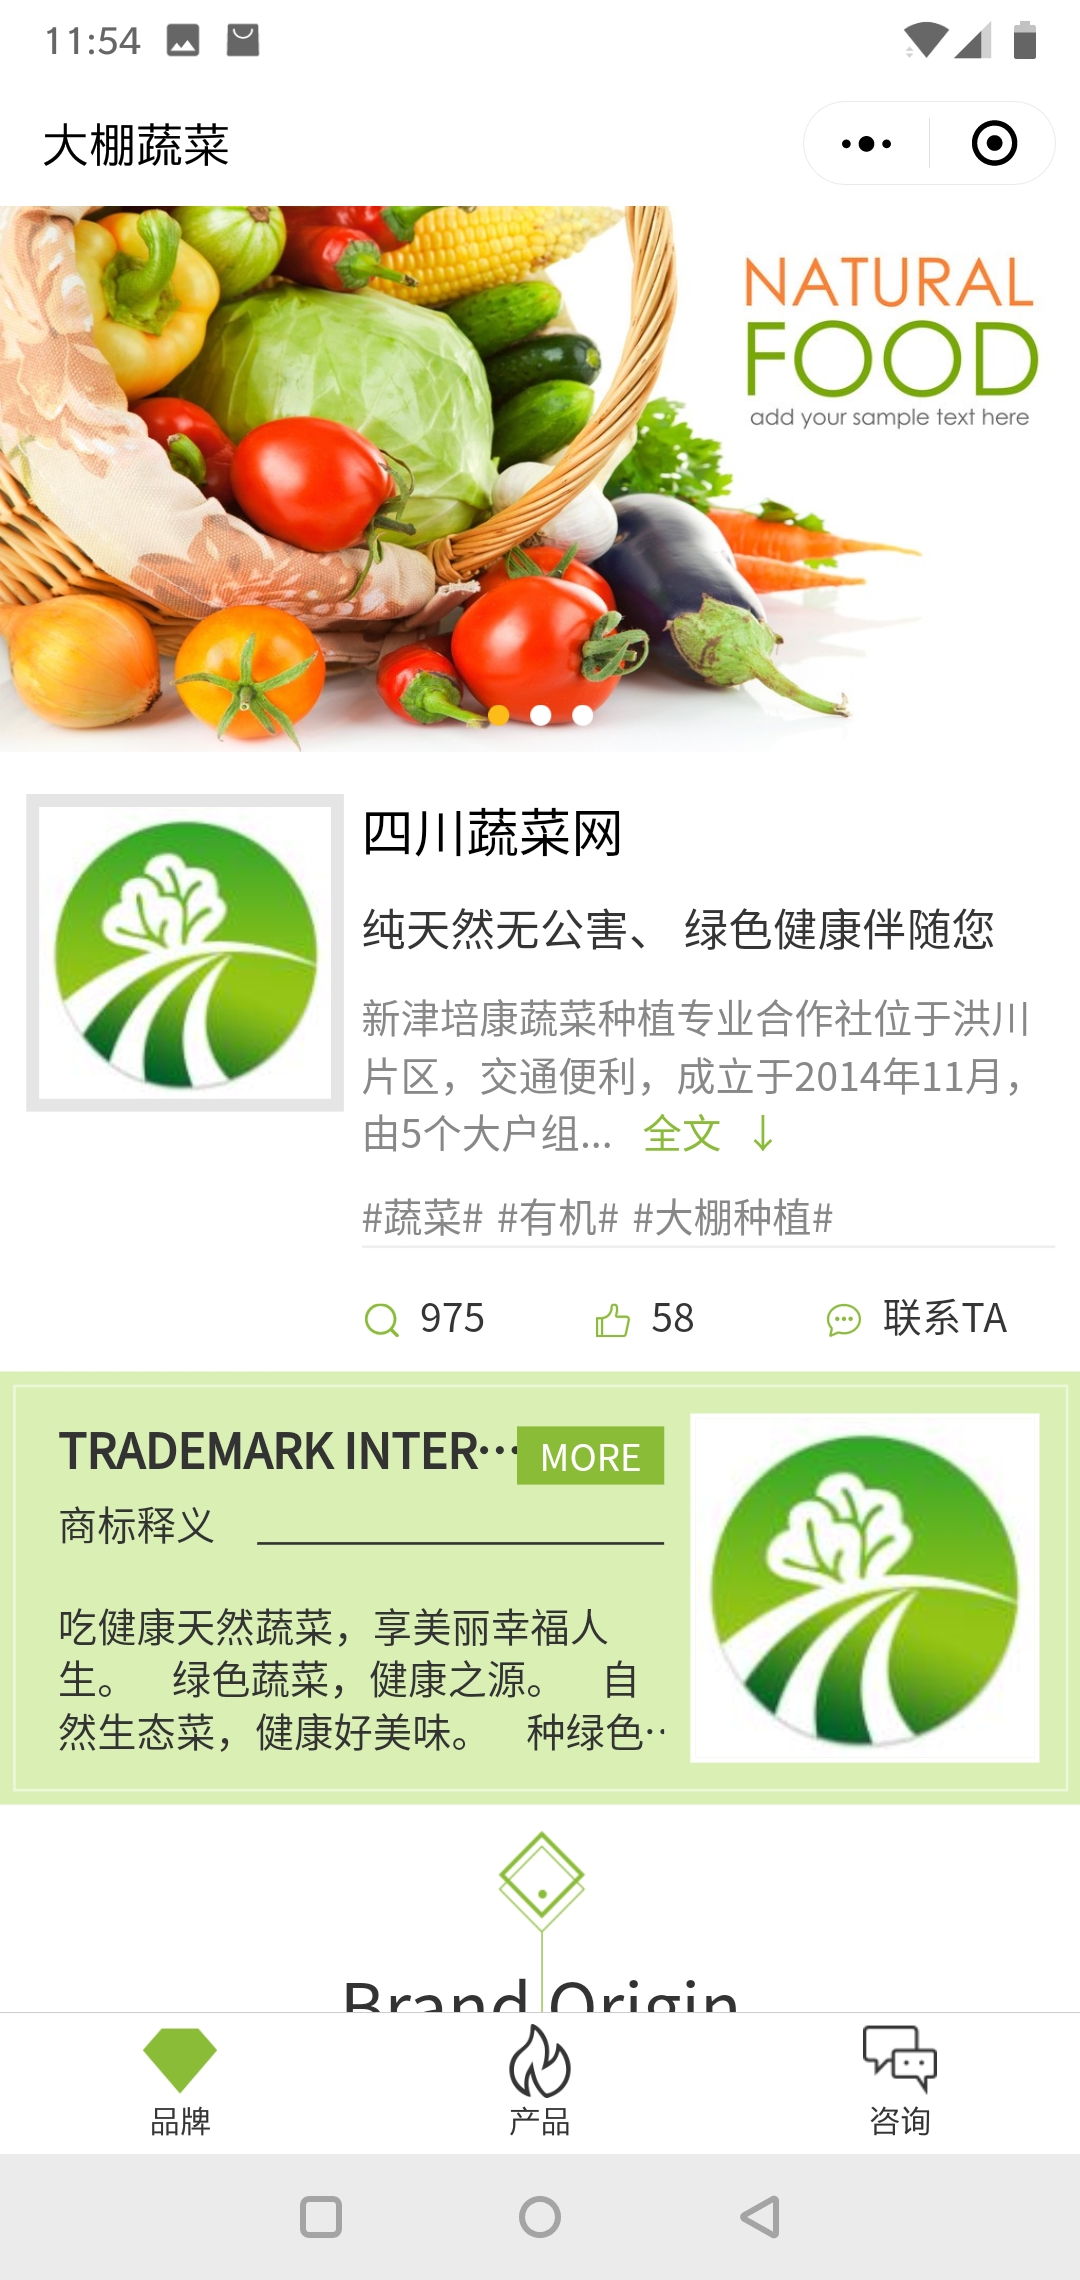 果蔬绿色成都-四川蔬菜网商标小程序高级版.jpg